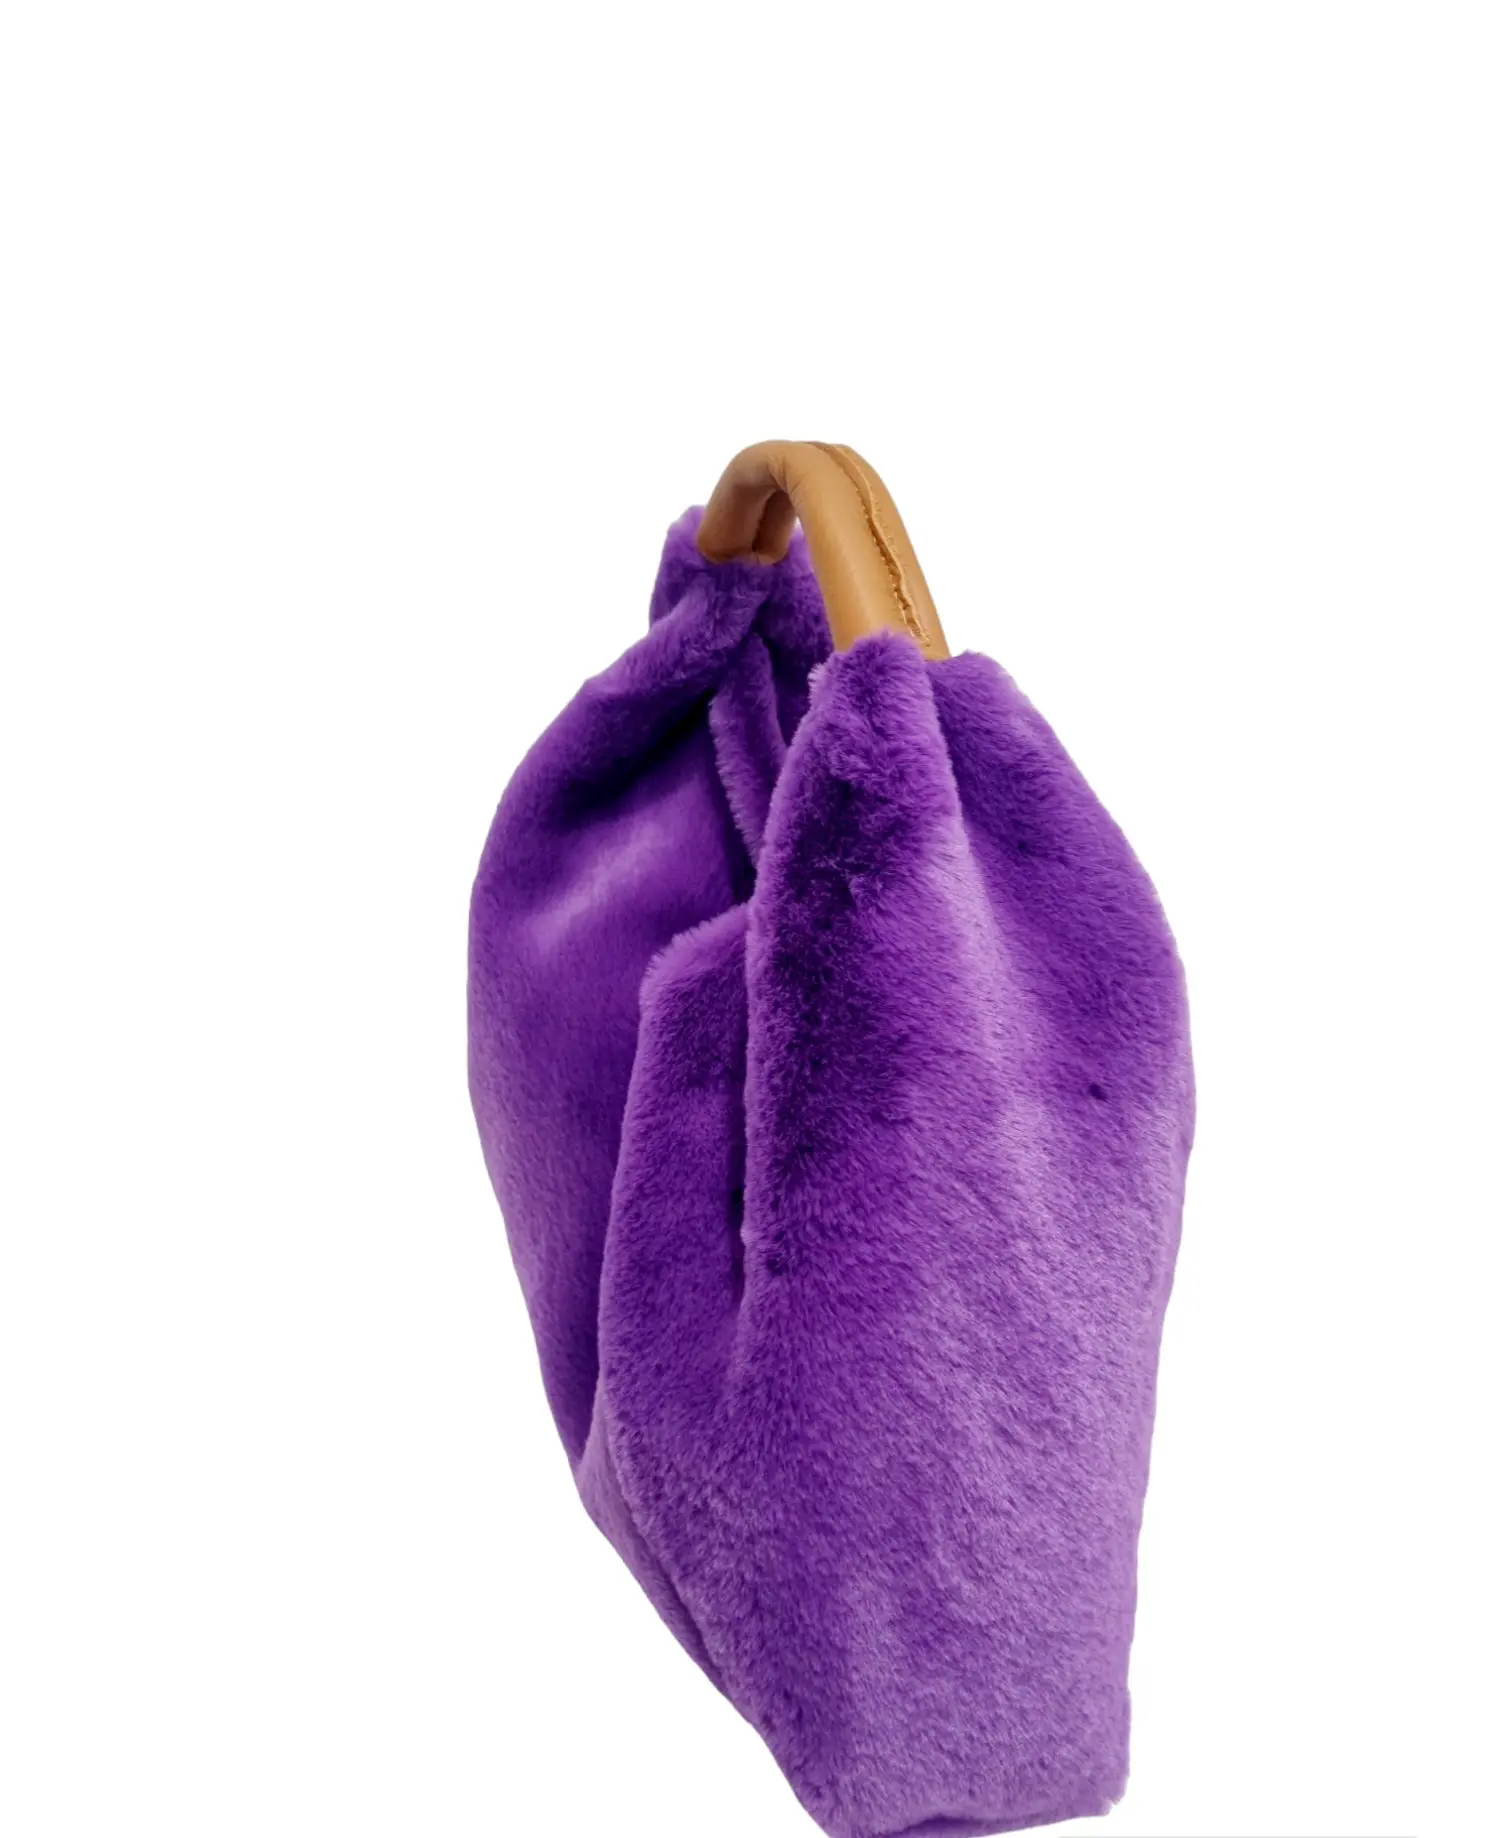 Sac pelosina ours violet avec poignée en cuir véritable, fabriqué en Italie, intérieur nu, fermeture bouton aimanté. A porter à la main ou à mi-bras Mesures L34 H 15 largeur bras 8cm.